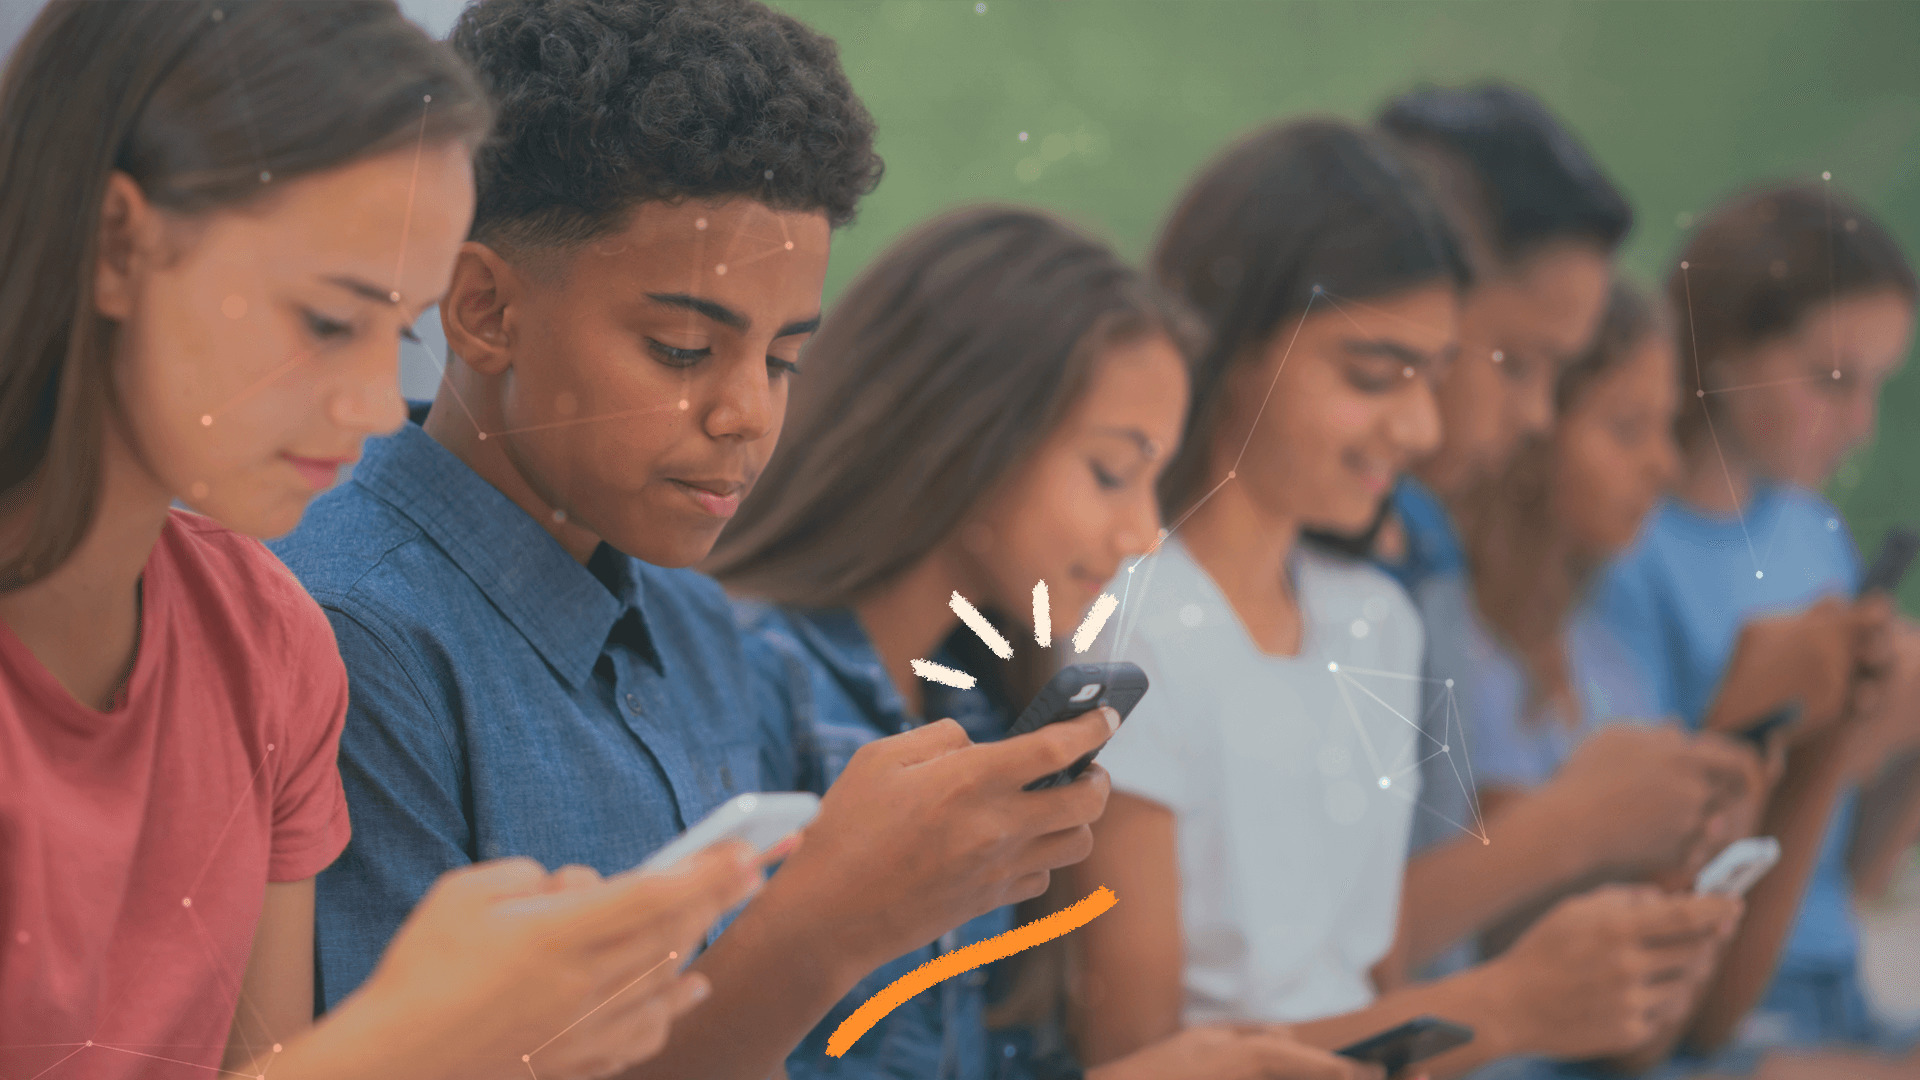 Um grupo de crianças estão sentados lado a lado e cada um olha para uma tela de celular